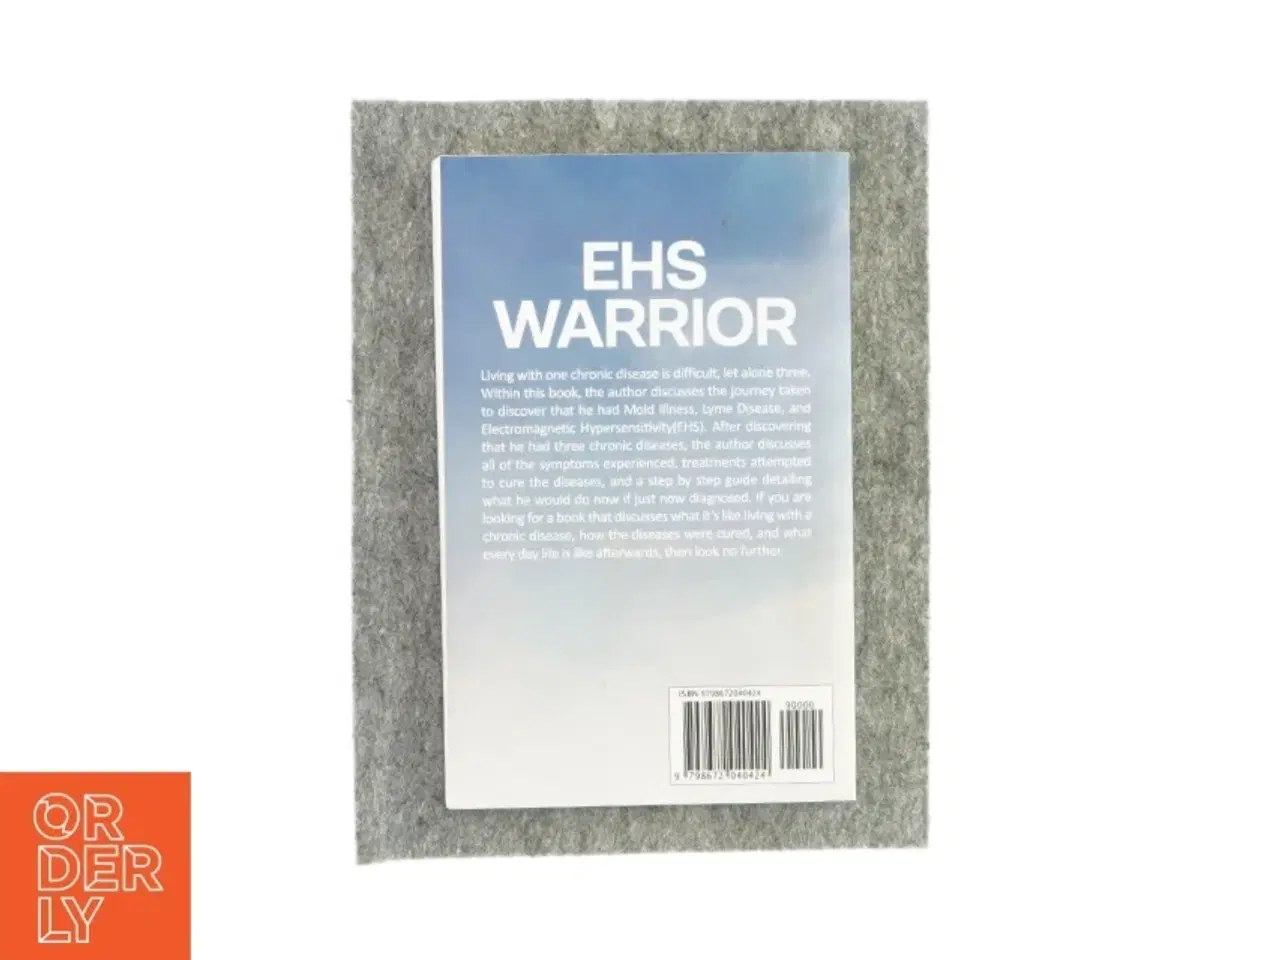 Billede 2 - Ehs warrior af Brian R. Humrich ph.d (bog)